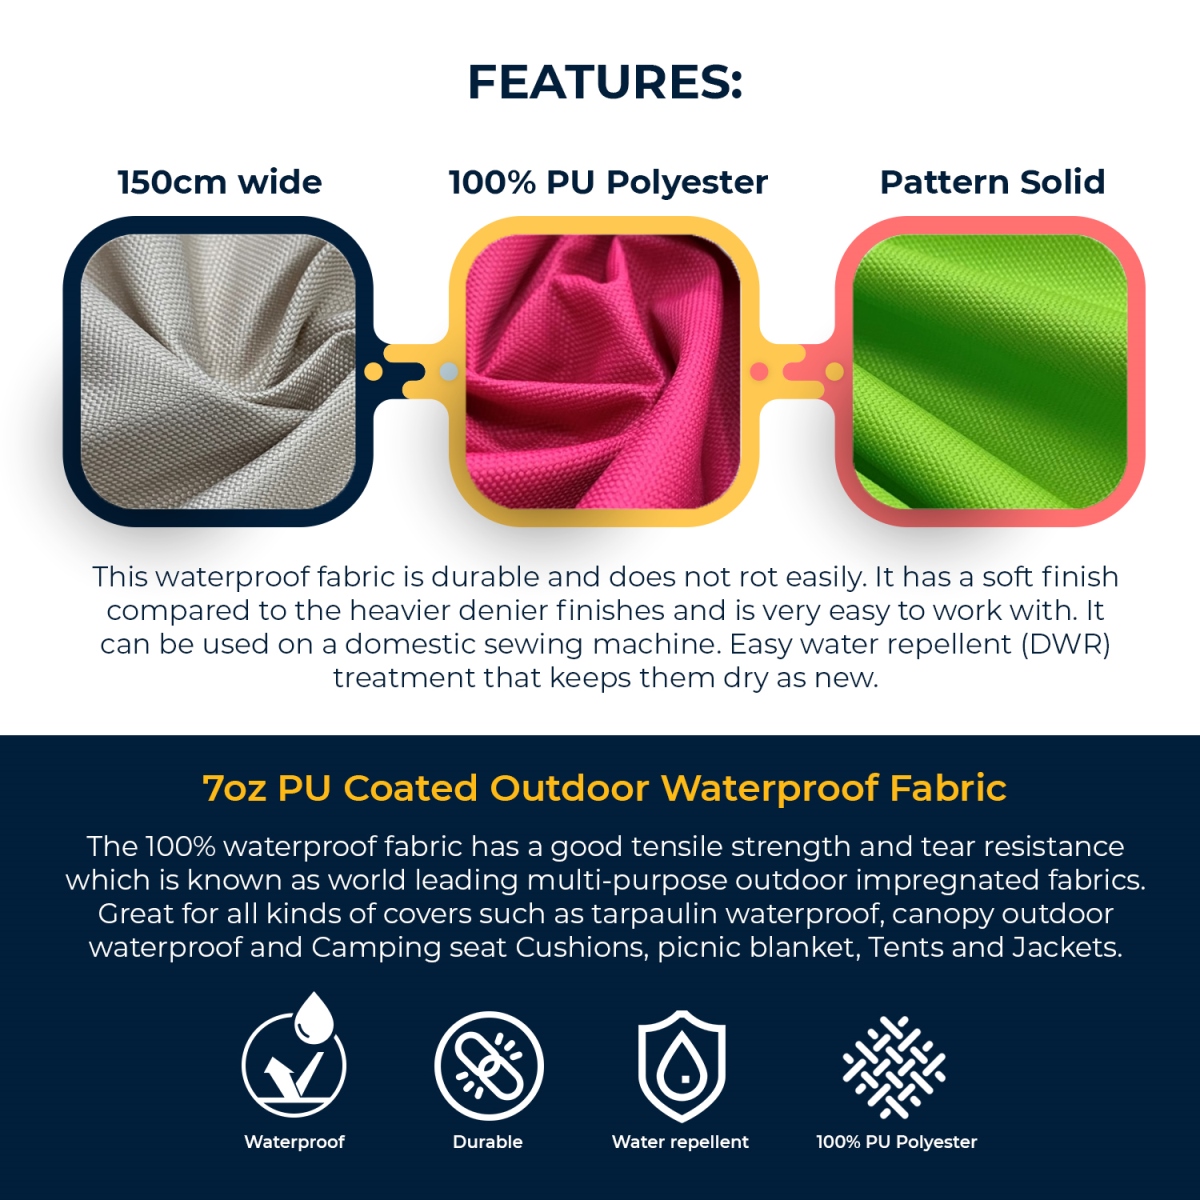 7oz Coated Outdoor Waterproof Features